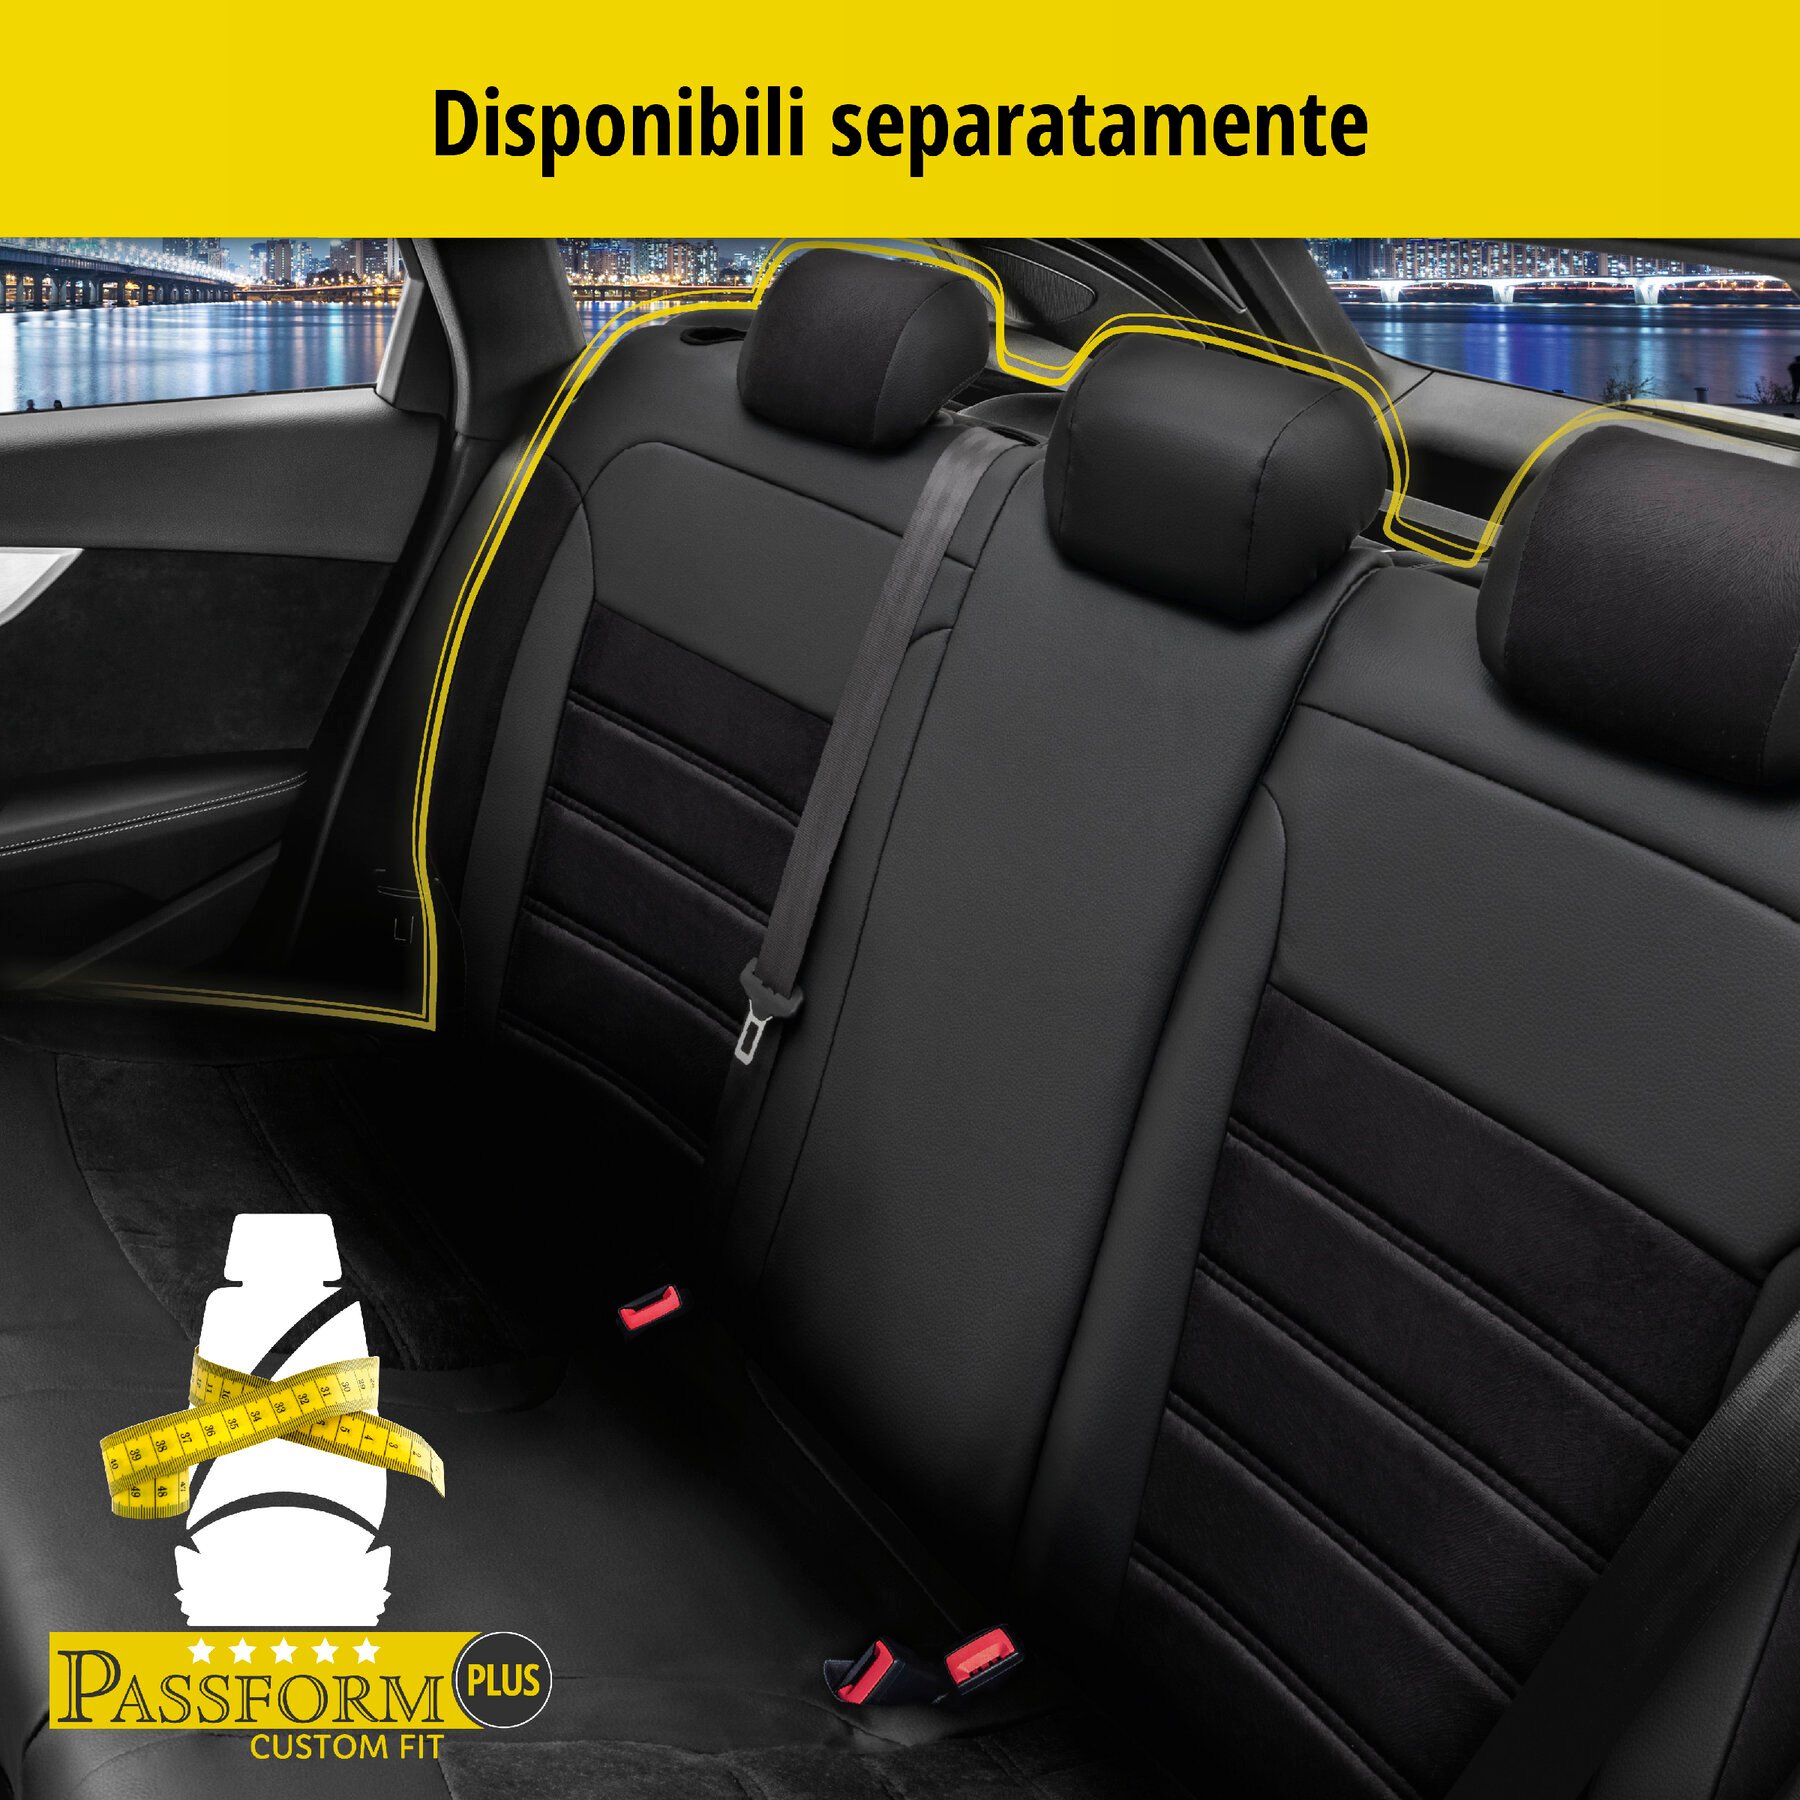 Coprisedili Bari per Fiat 500X 09/2014-Oggi, 2 coprisedili singoli per sedili normali